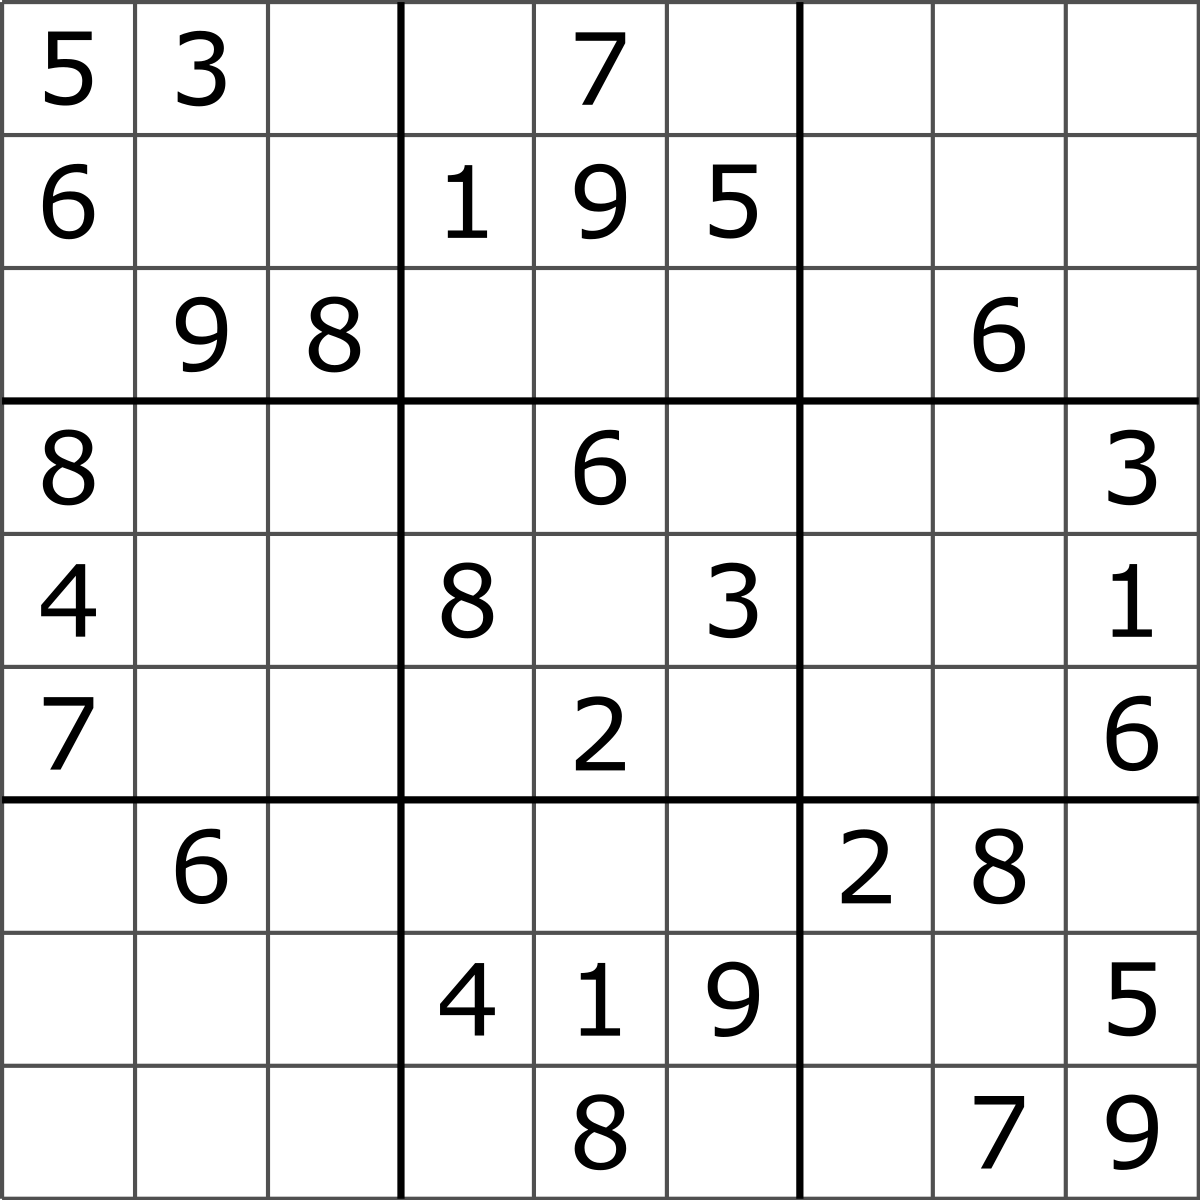 Sudoku_Puzzle_by_L2G-20050714_standardized_layout.svg.png